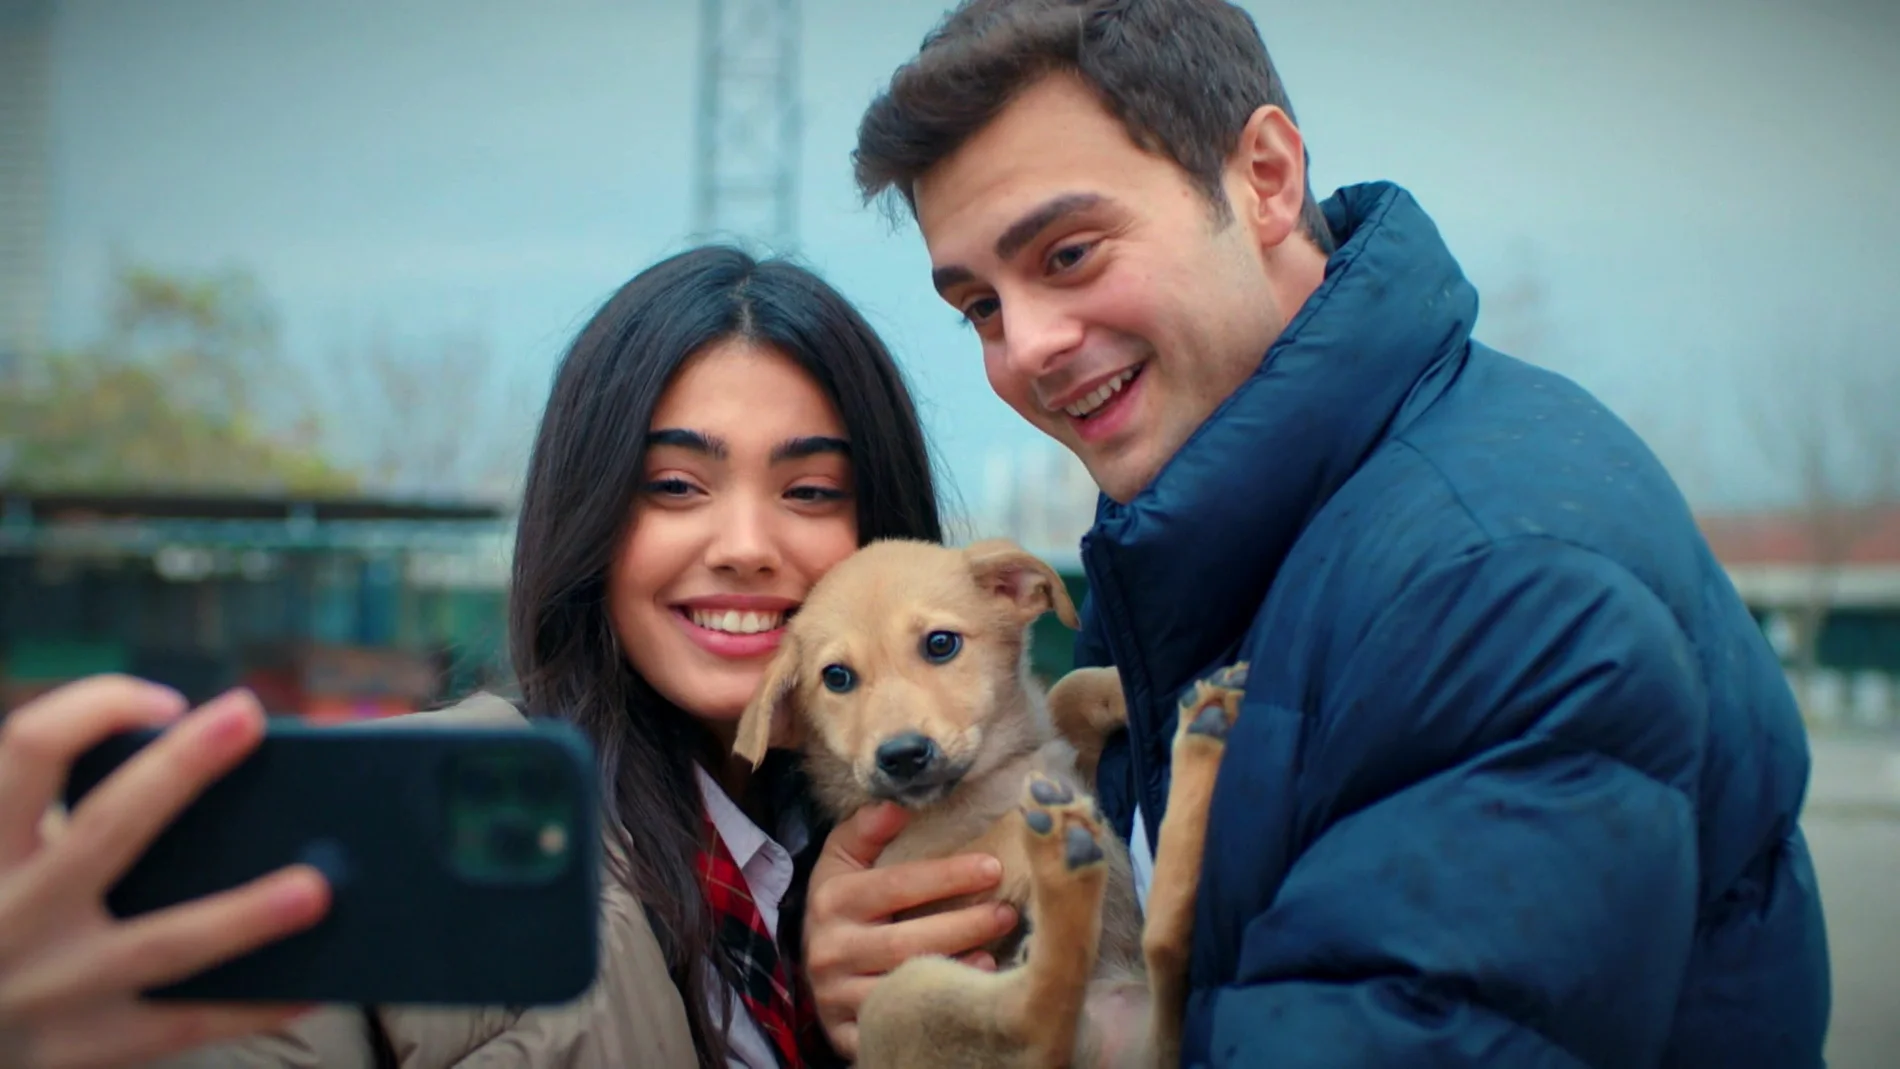 Ömer emociona a Süsen con una bonita sorpresa... ¡adoptan a un perrito de un refugio de animales!